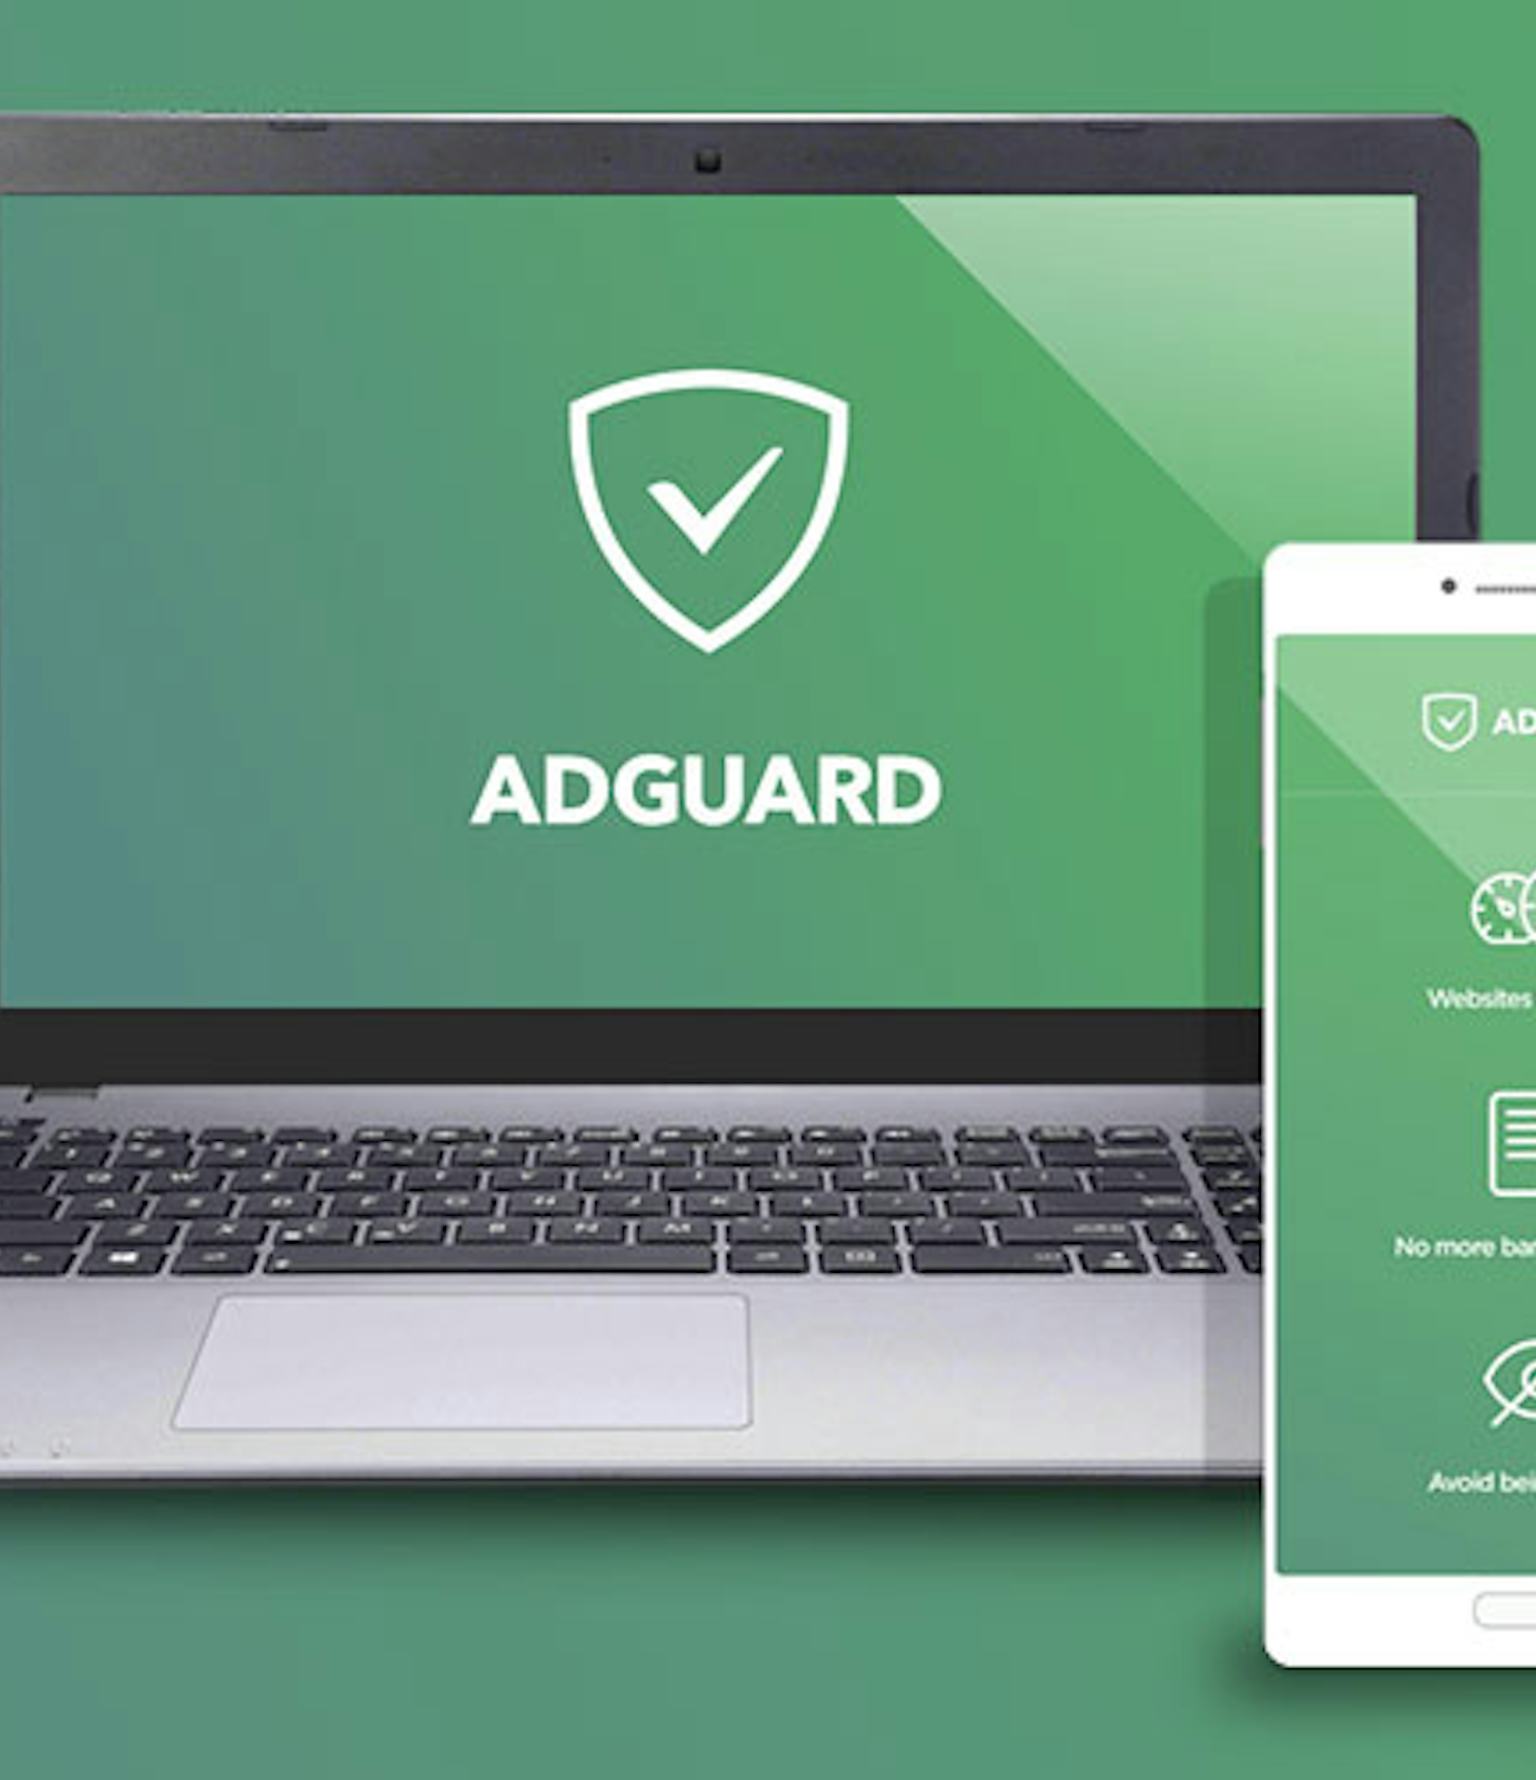 adguard blog coupon july 2019